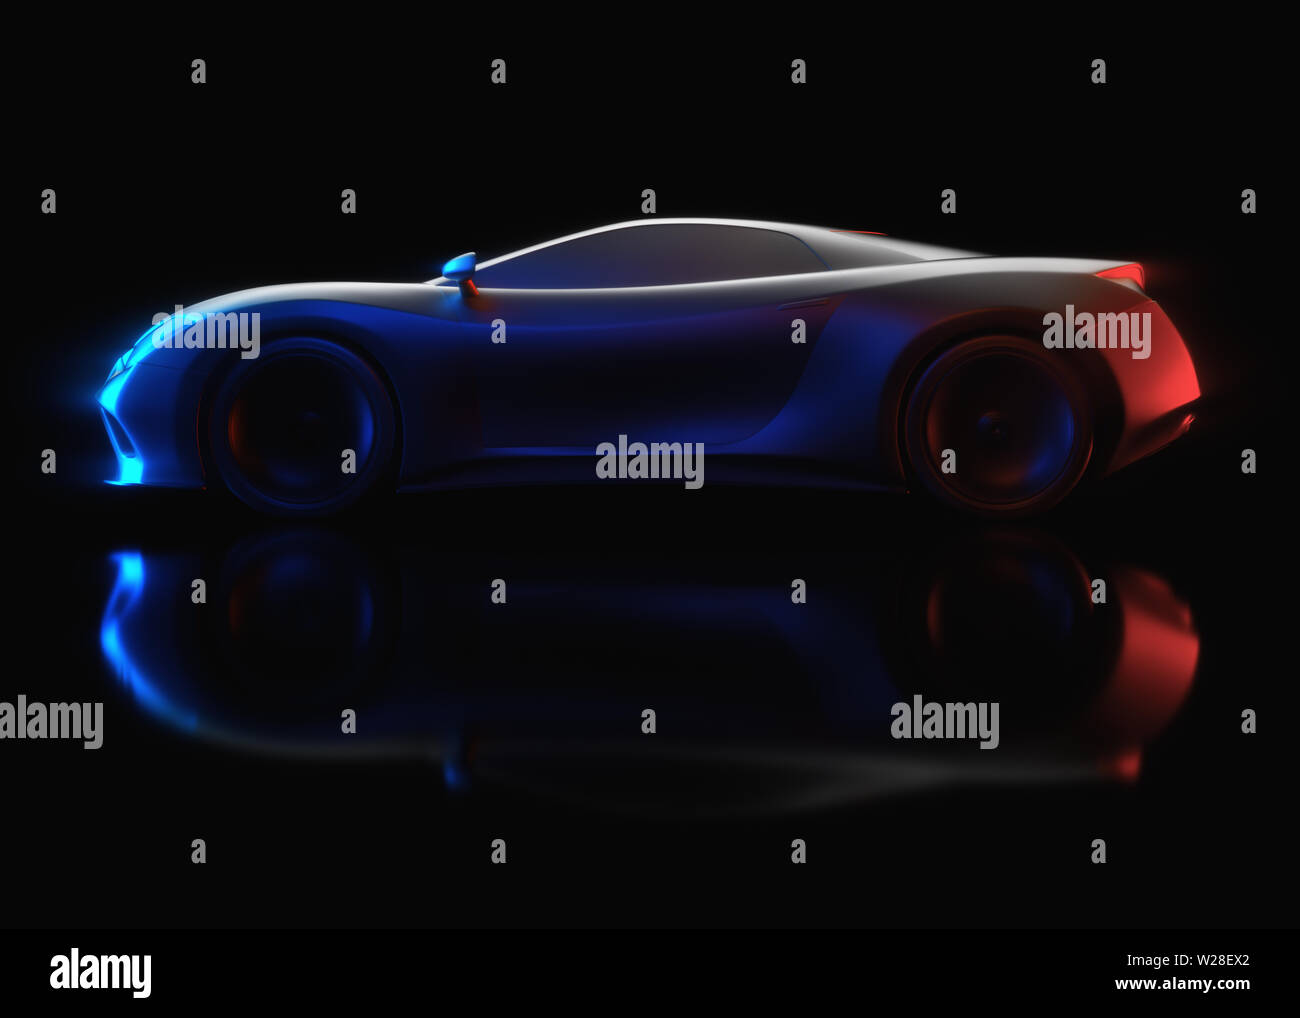 Sports Car Concept realizados en el software 3D. Concepto de imagen prototipo y pruebas aerodinámicas. Foto de stock